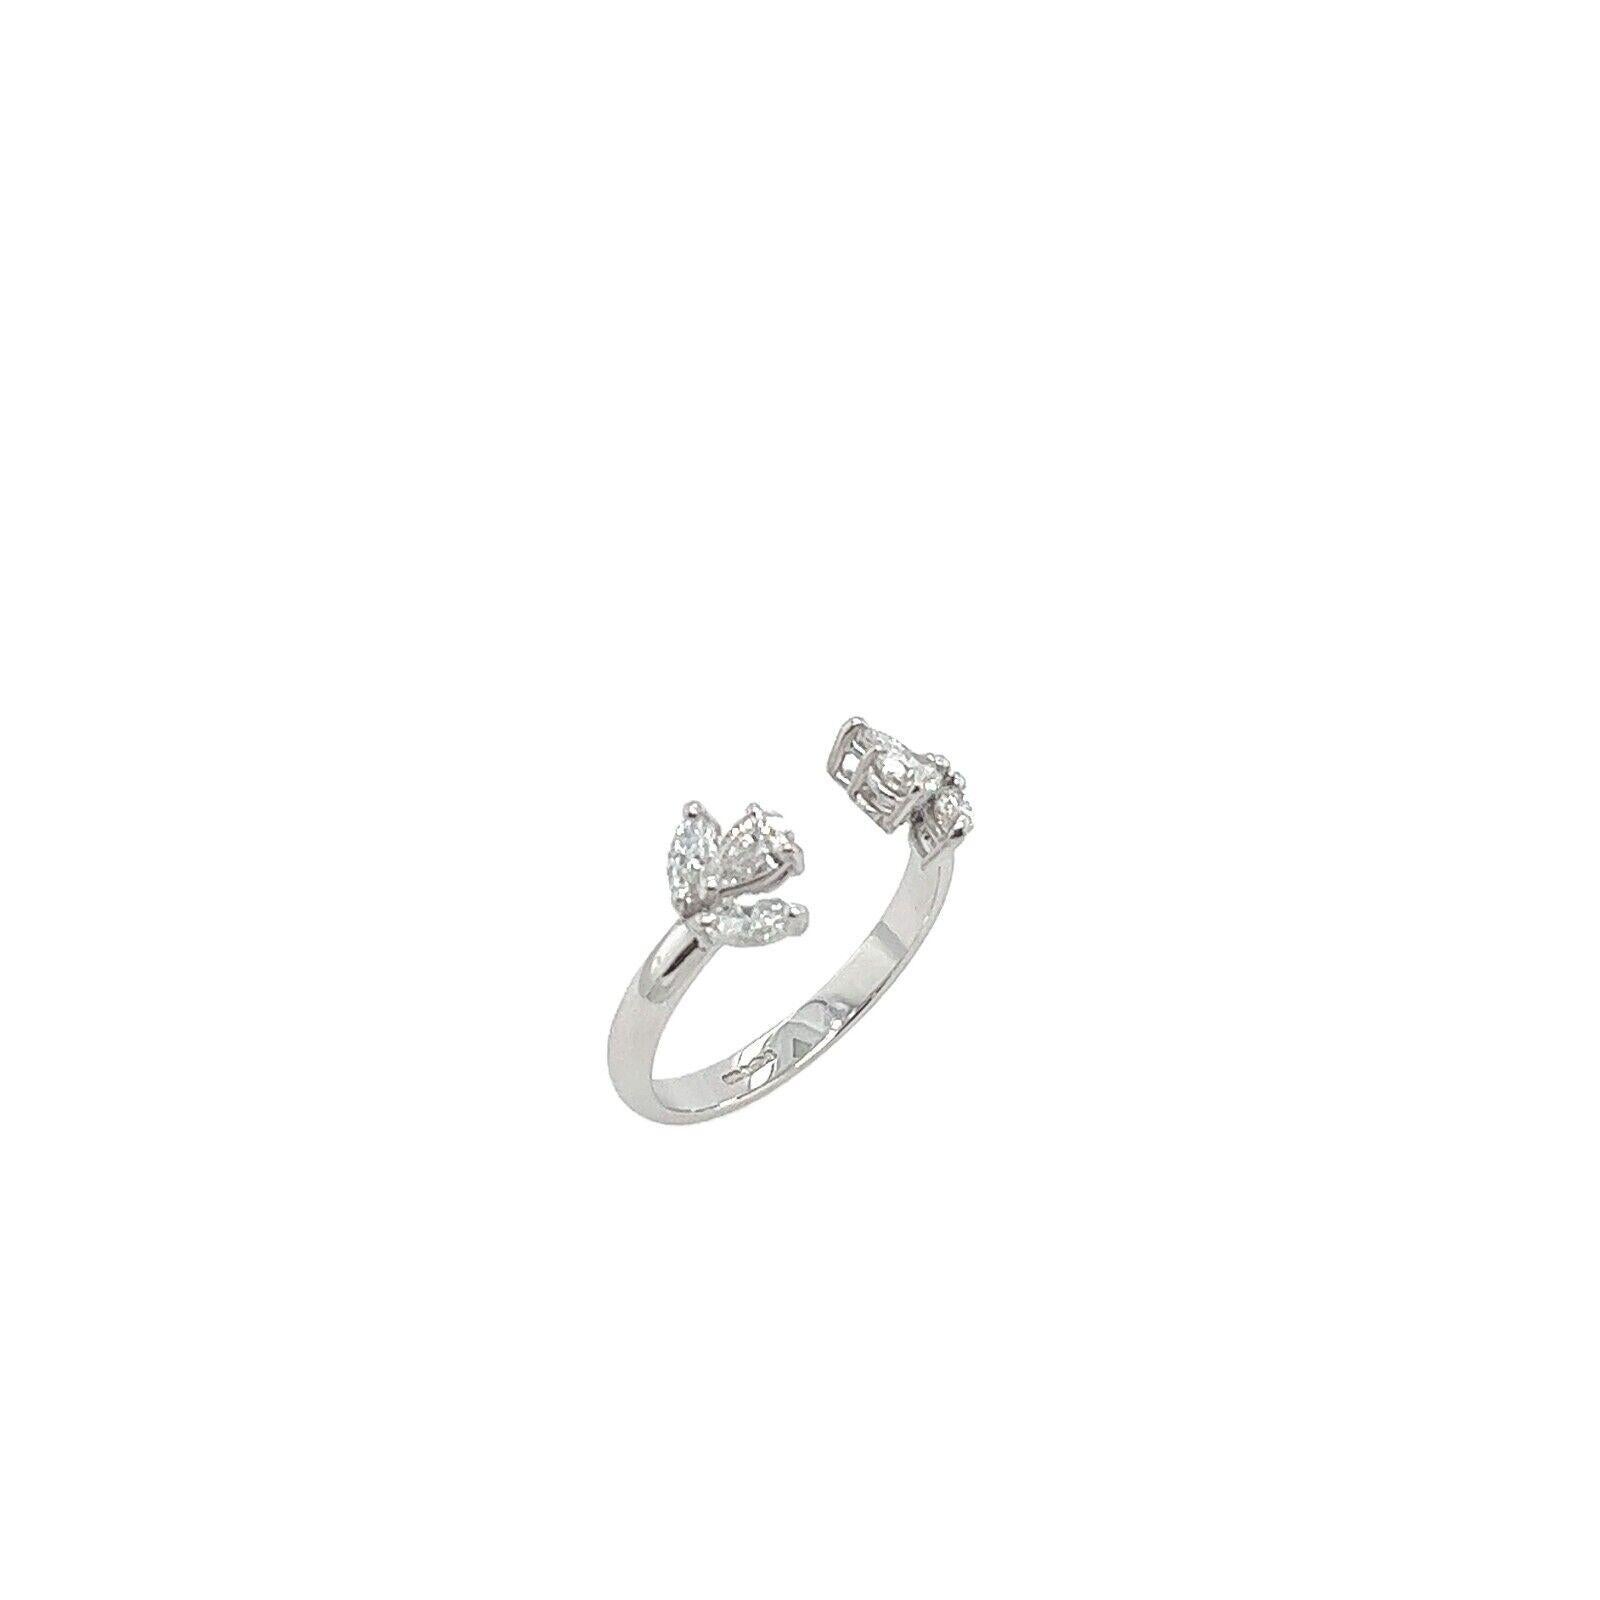 Diese wunderschöne Diamant-Kleid Ring mit 2 Birne Form & 4 Marquise Form Diamanten in Platin, mit einem Gesamtgewicht von Diamanten von 0,60ct.

Zusätzliche Informationen:
Gesamtgewicht der Diamanten: 0,60ct
Farbe des Diamanten: G
Diamant Reinheit: